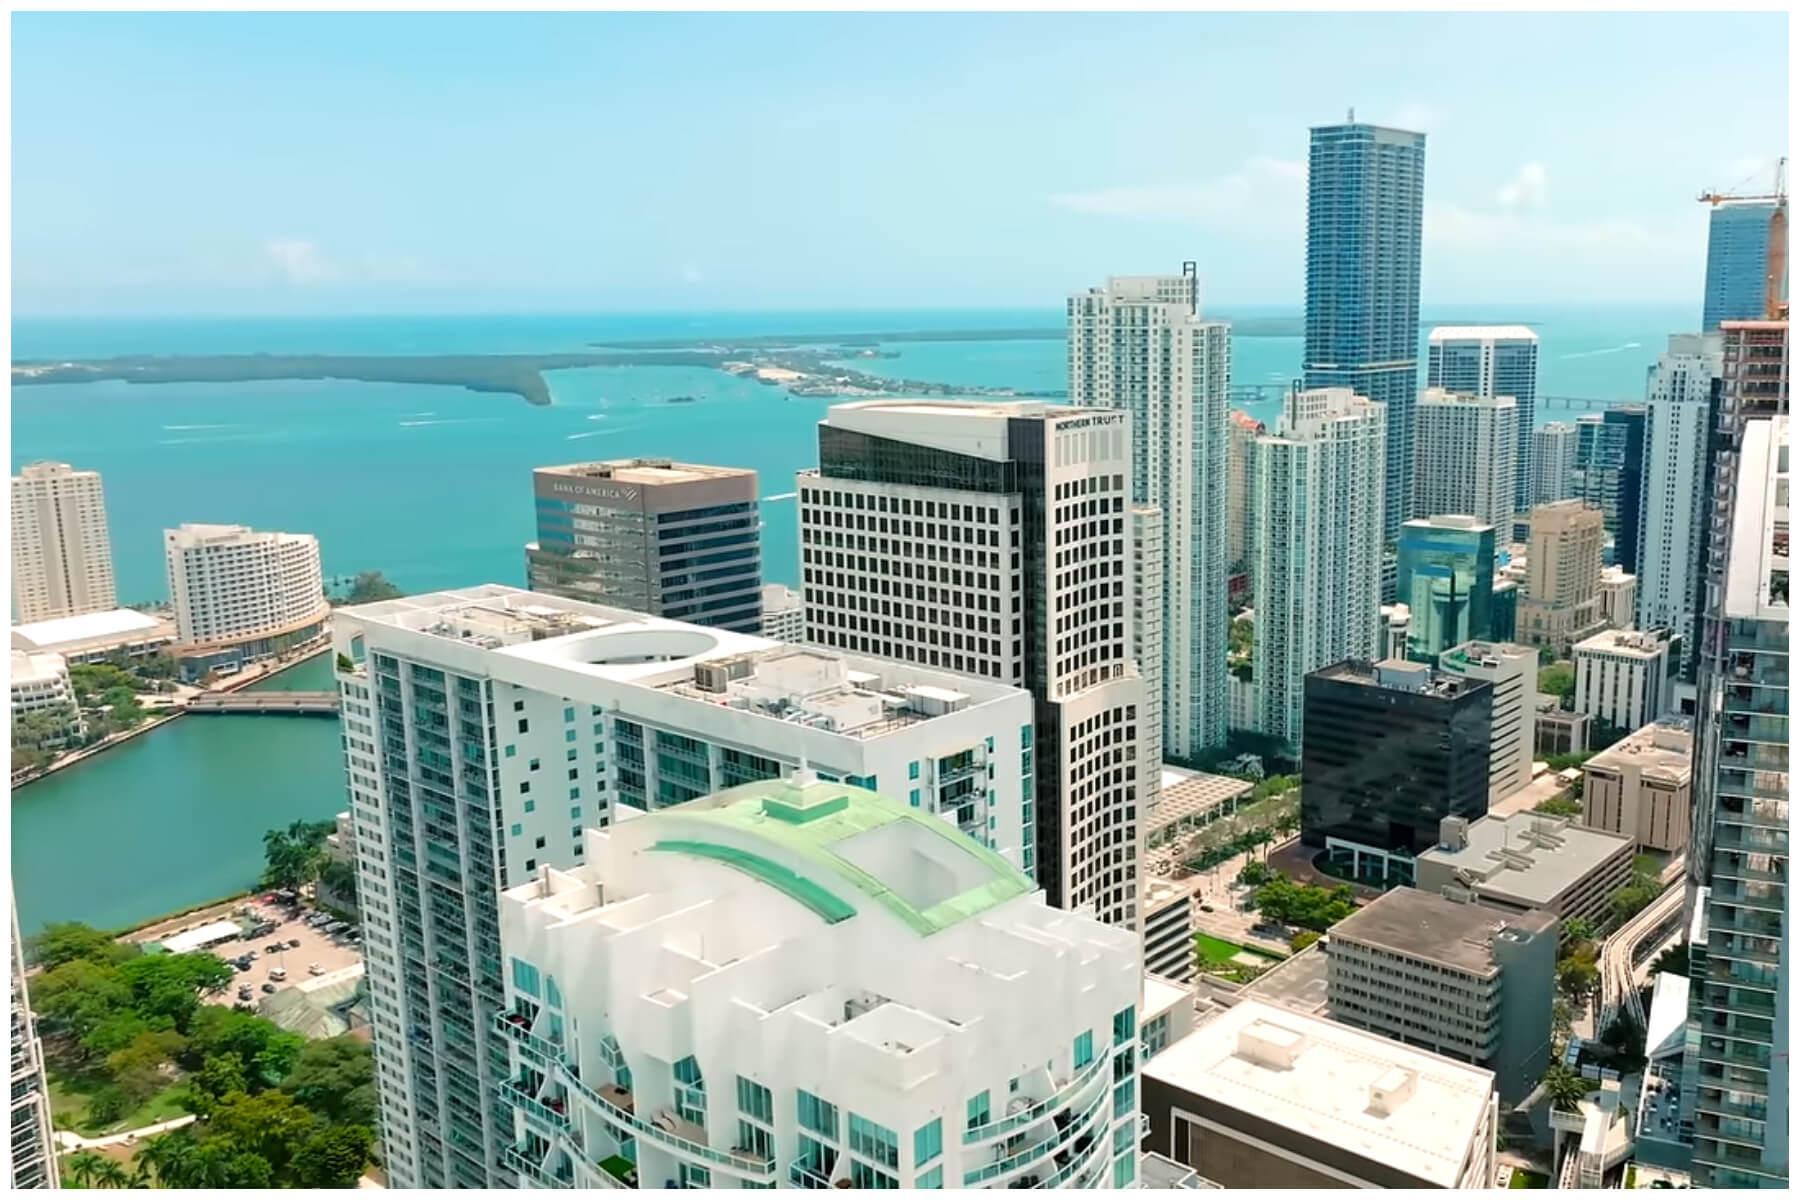 Vista aérea de Miami, ciudad cada vez más inasequible. (Captura de pantalla © Dron snap- YouTube)